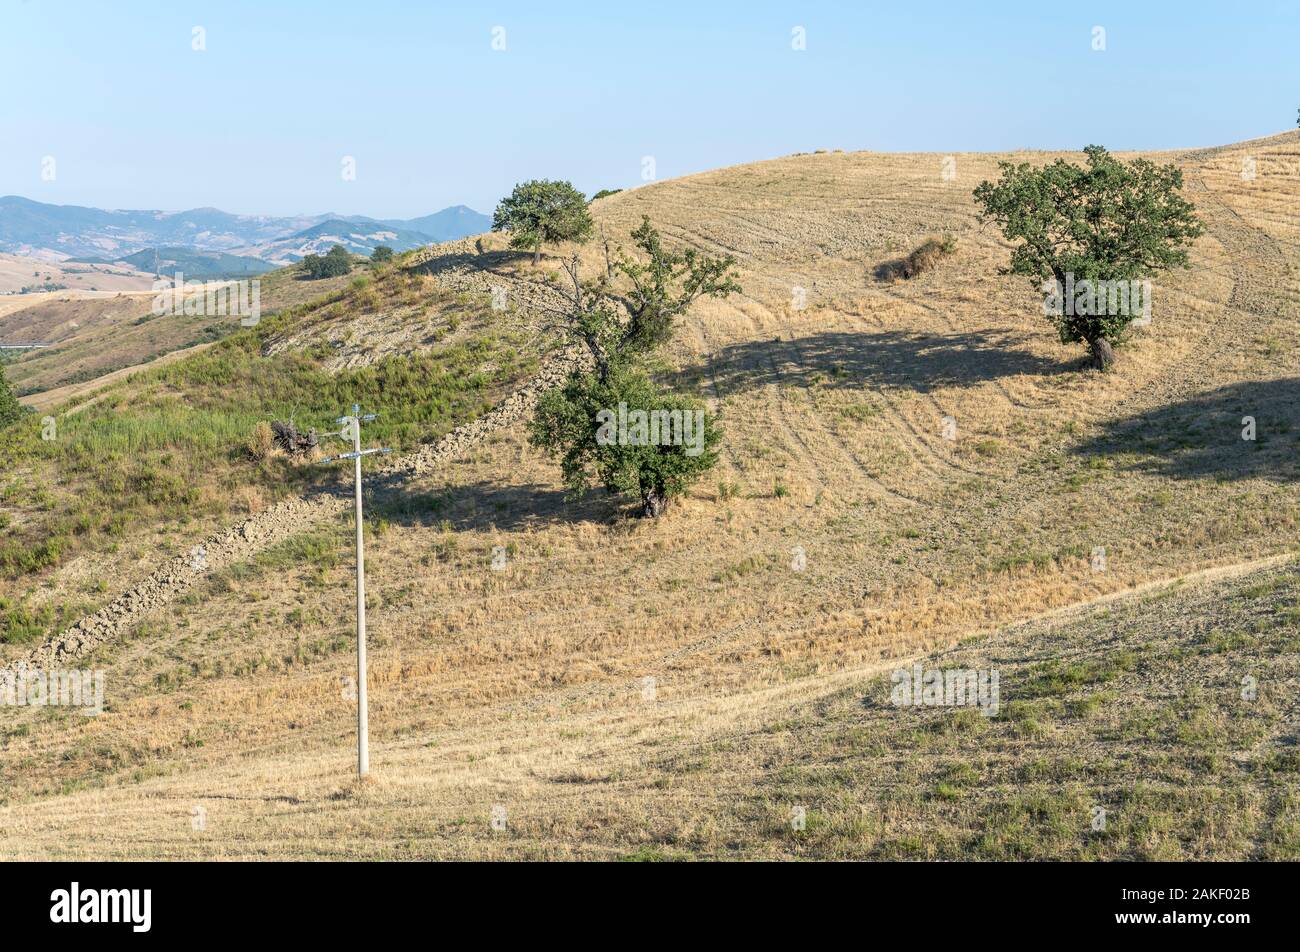 Paysage du sud de l'Apennin d'arbres sur des talus, tourné en été lumineux lumière près de Roccanova, Potenza, Basilicate, Italie Banque D'Images